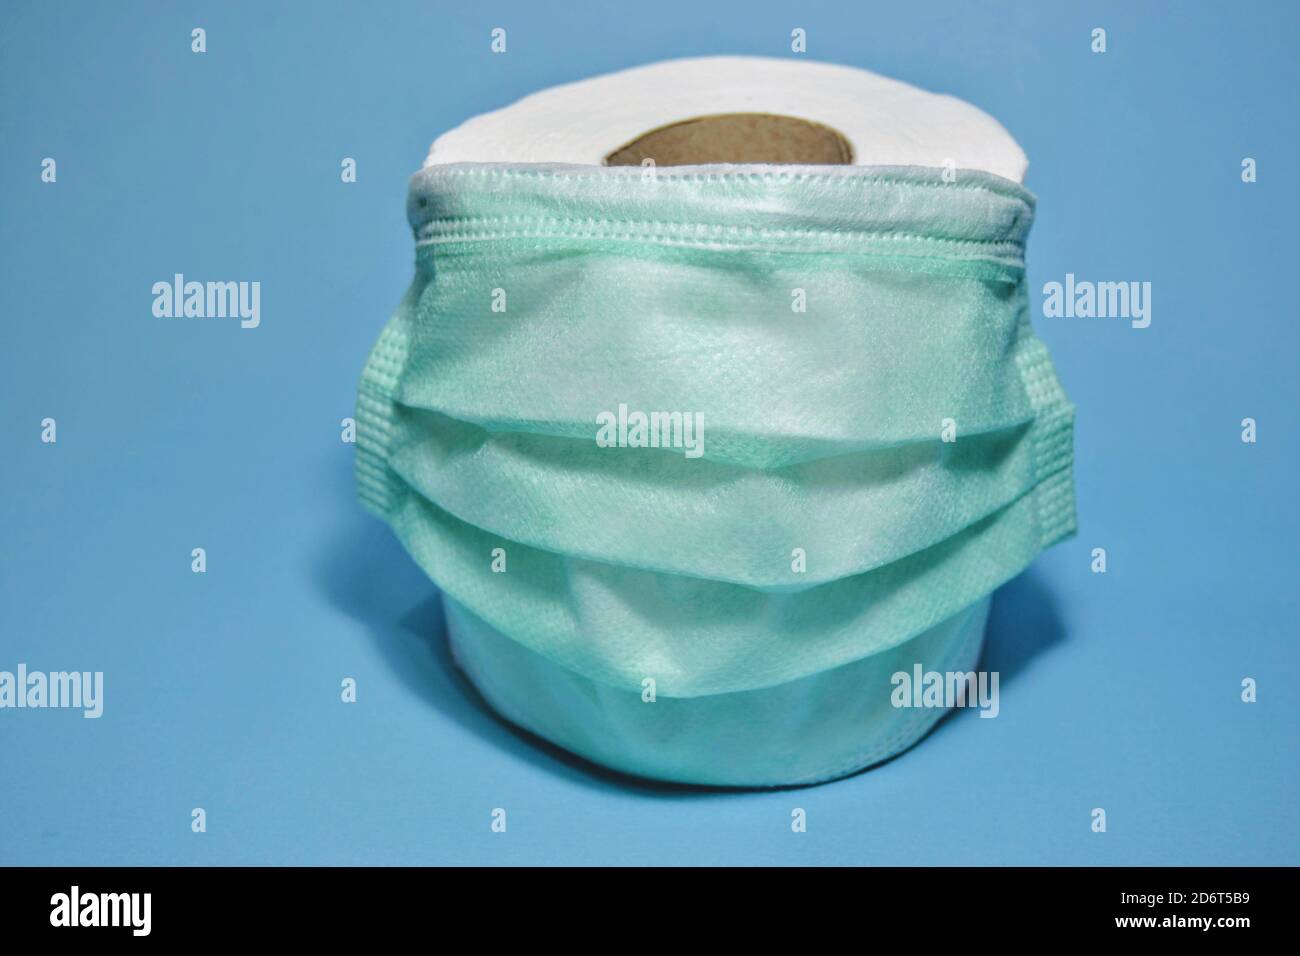 I due oggetti più discussi nel 2020: Maschera e carta igienica. Una foto include maschera medica verde e carta igienica bianca. Foto Stock